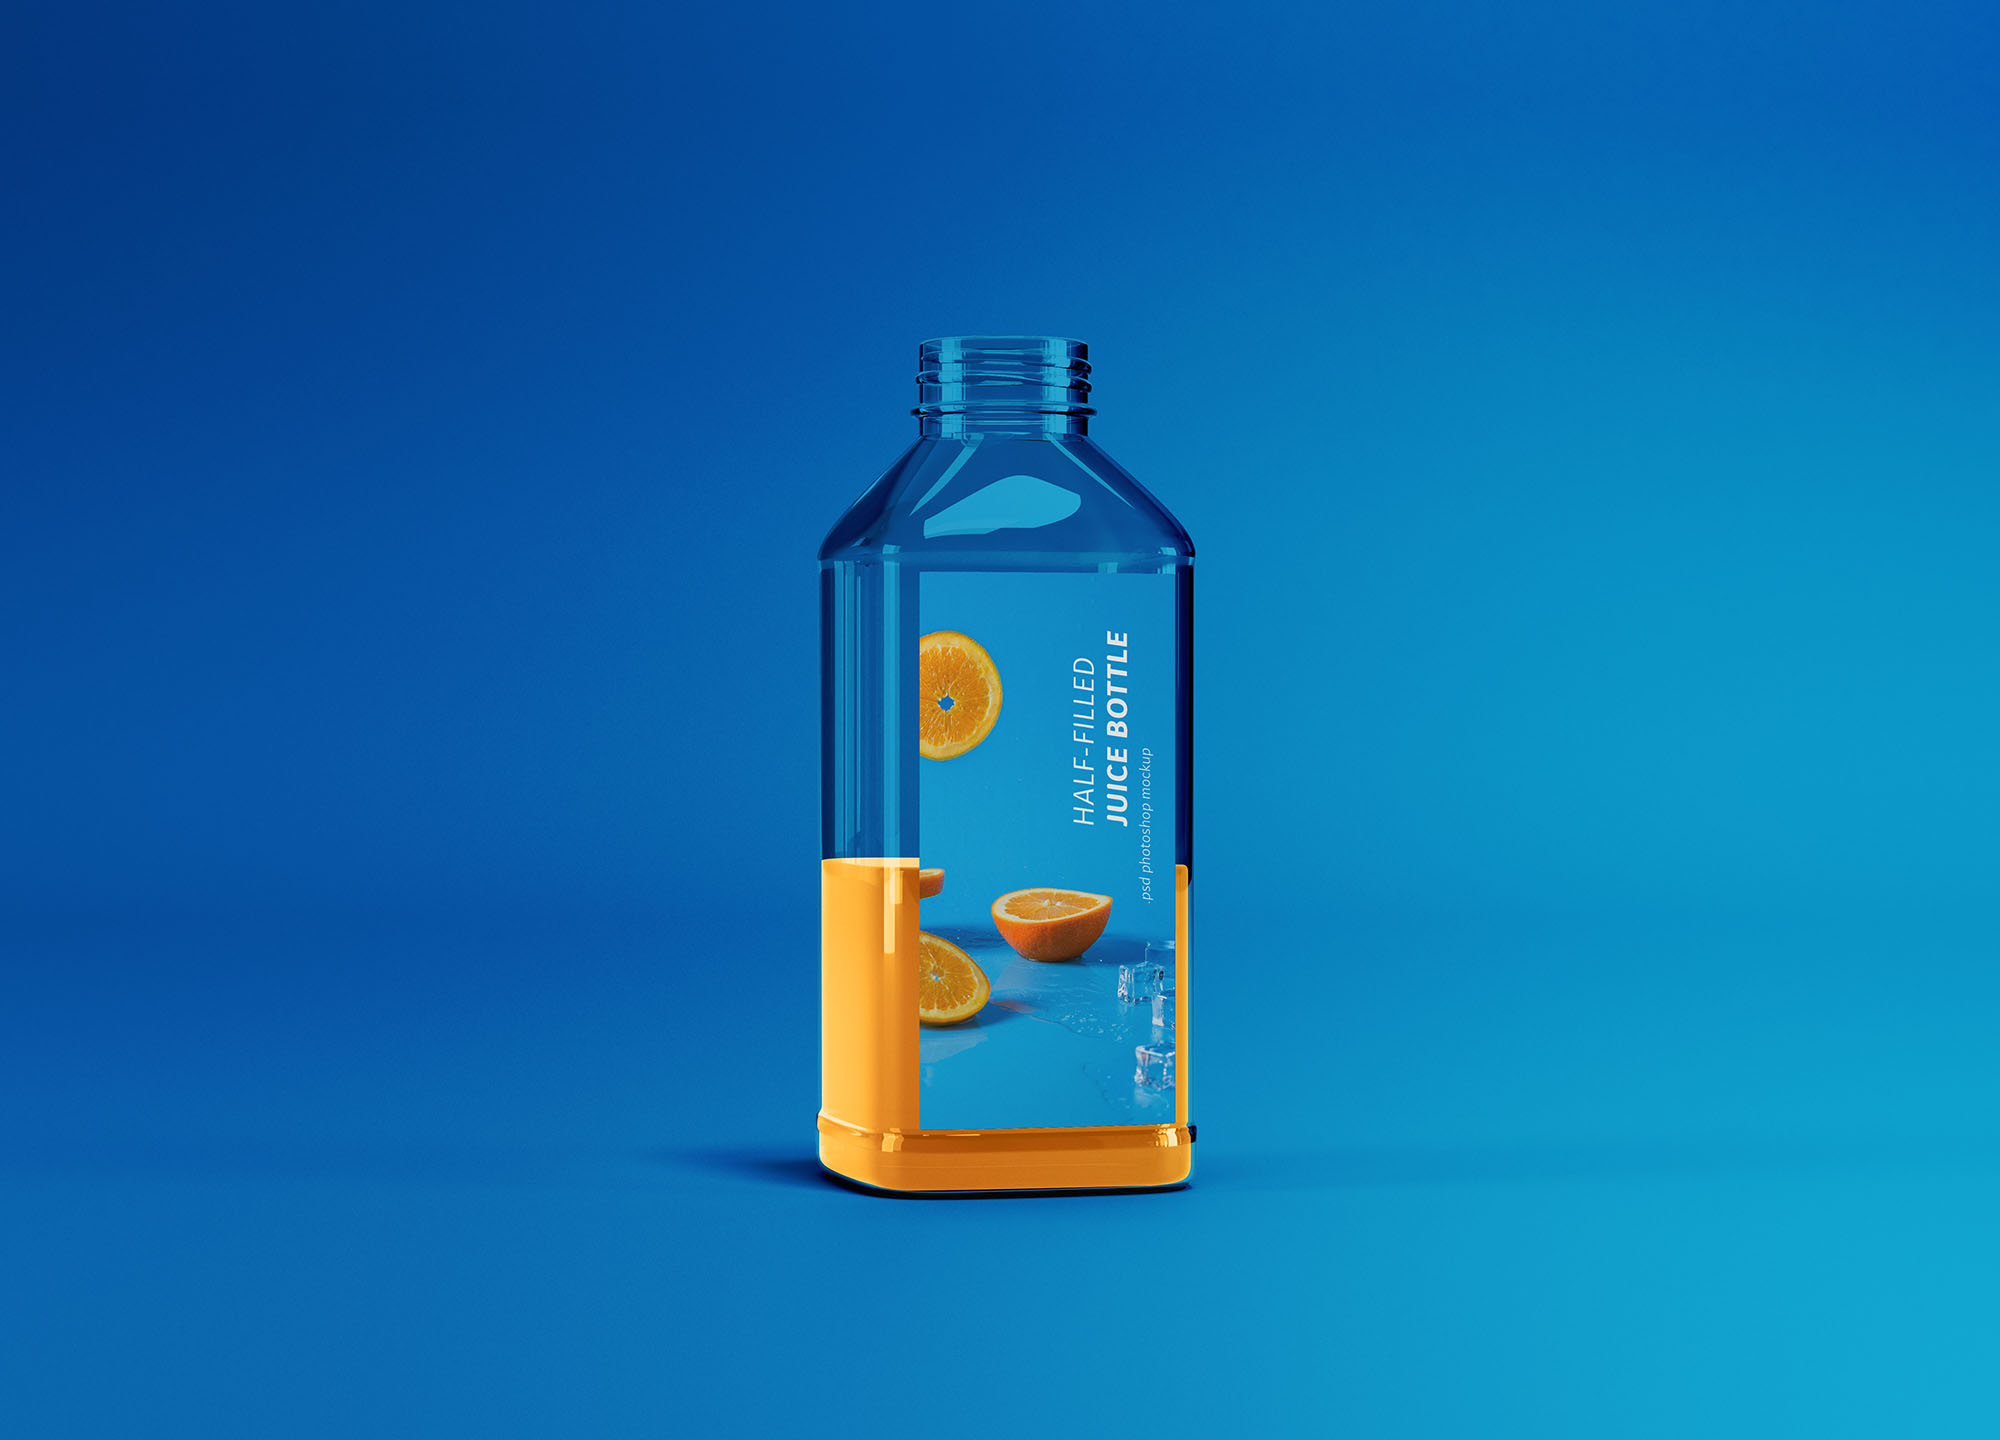 半罐透明塑料果汁瓶外观设计展示16图库精选 Half-filled Juice Bottle Mockup插图